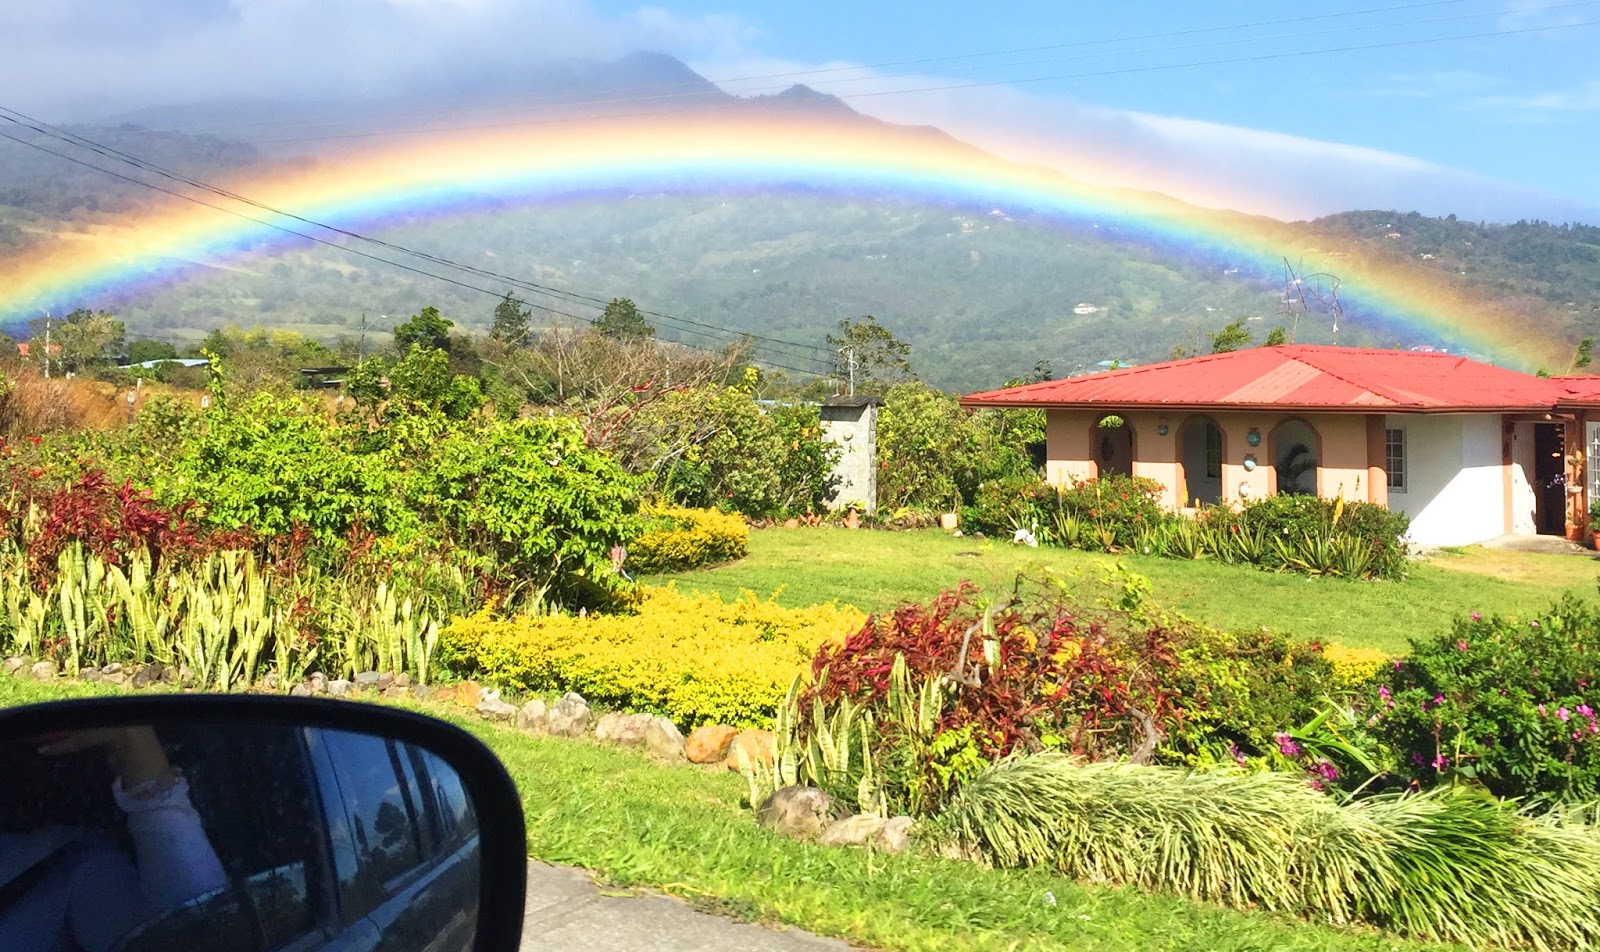 Beautiful rainbow in Boquete, Chiriqui